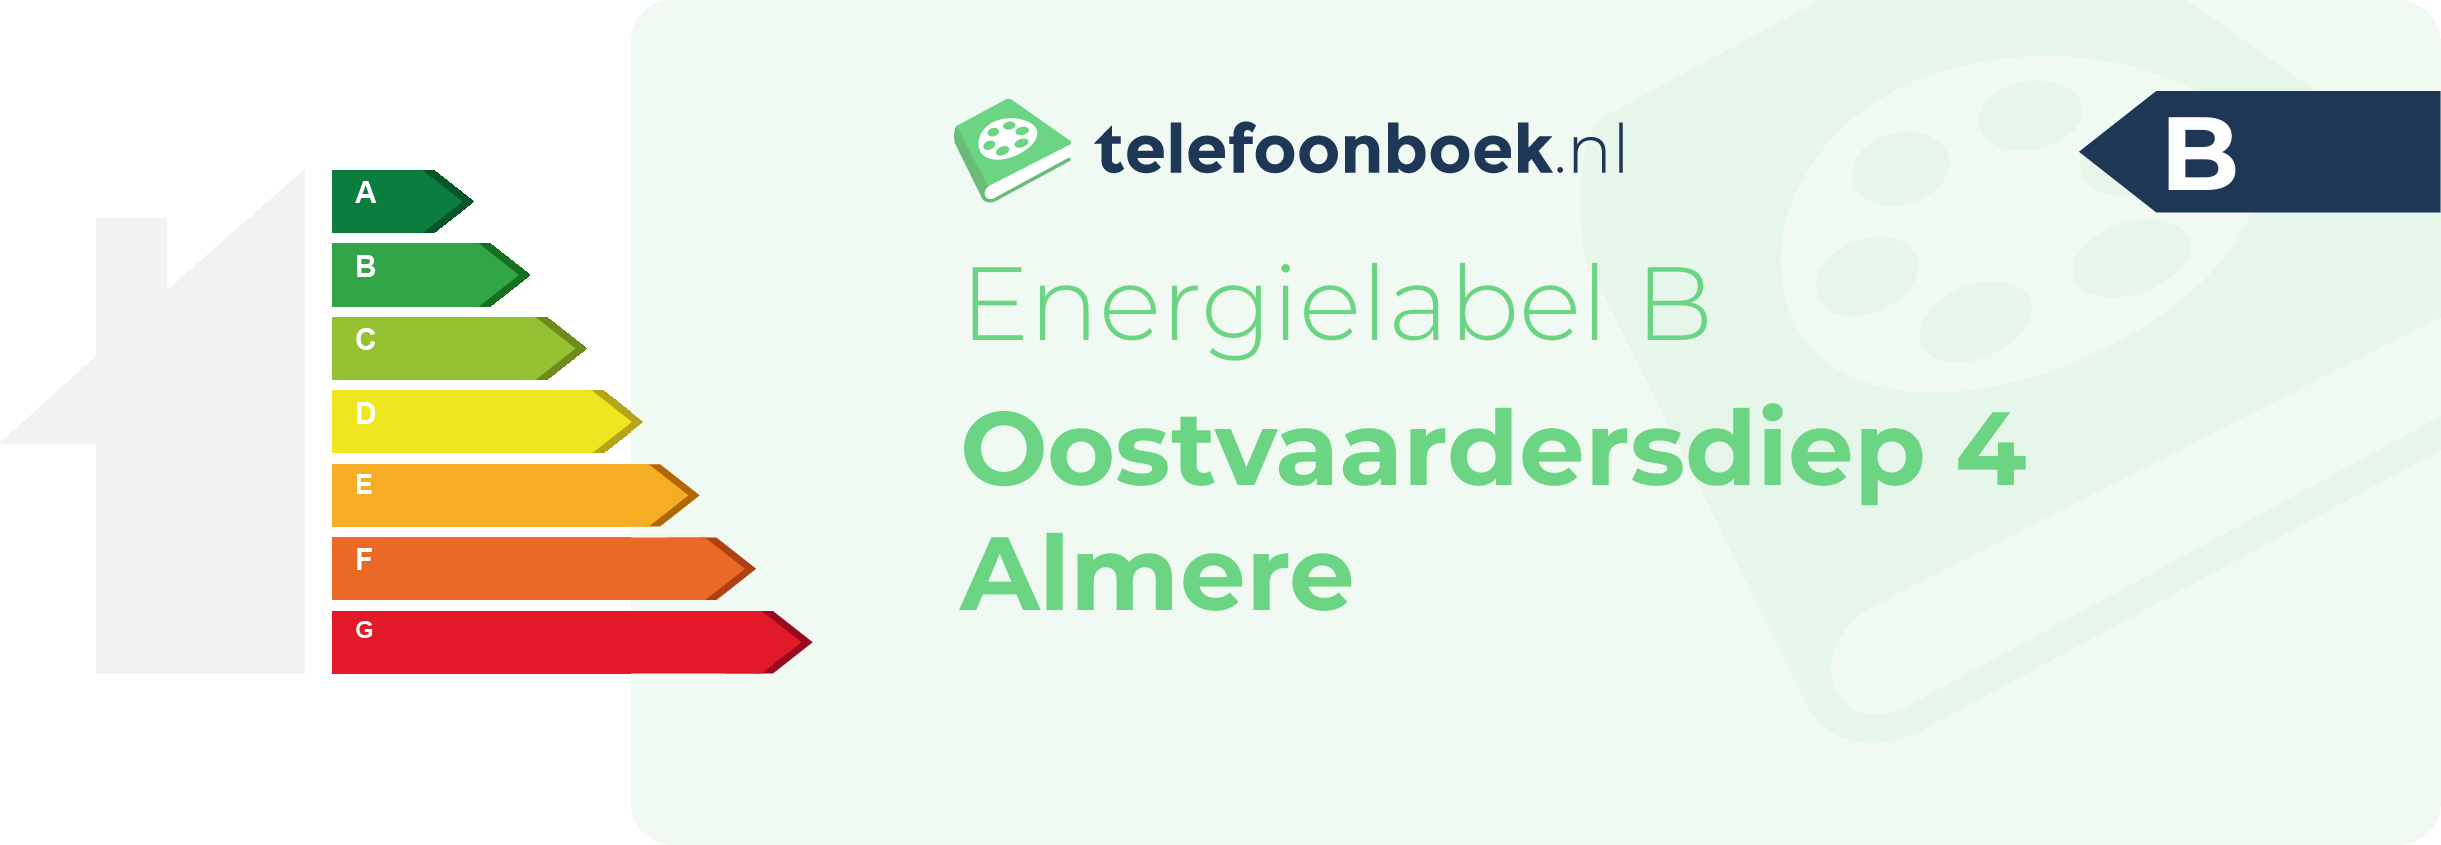 Energielabel Oostvaardersdiep 4 Almere